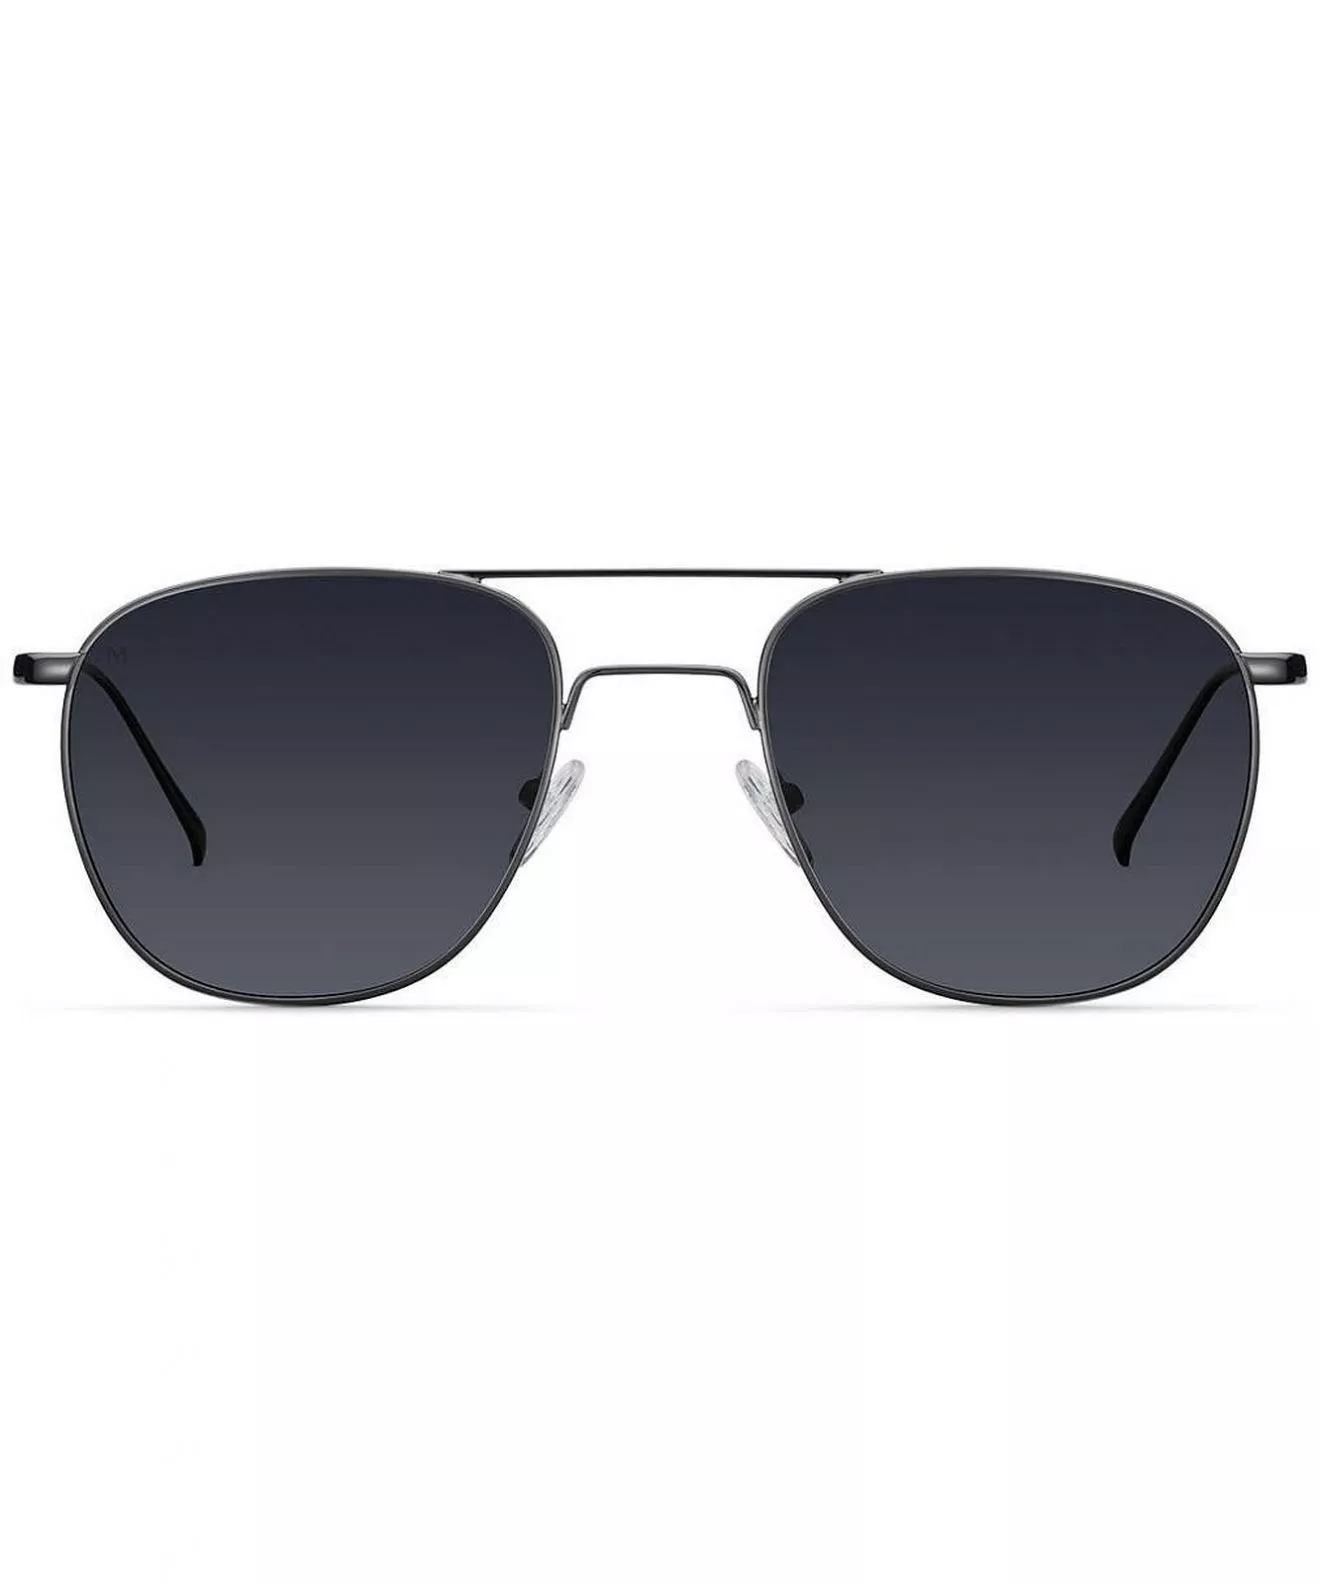 Meller Bamako All Black Sunglasses BM-TUTCAR